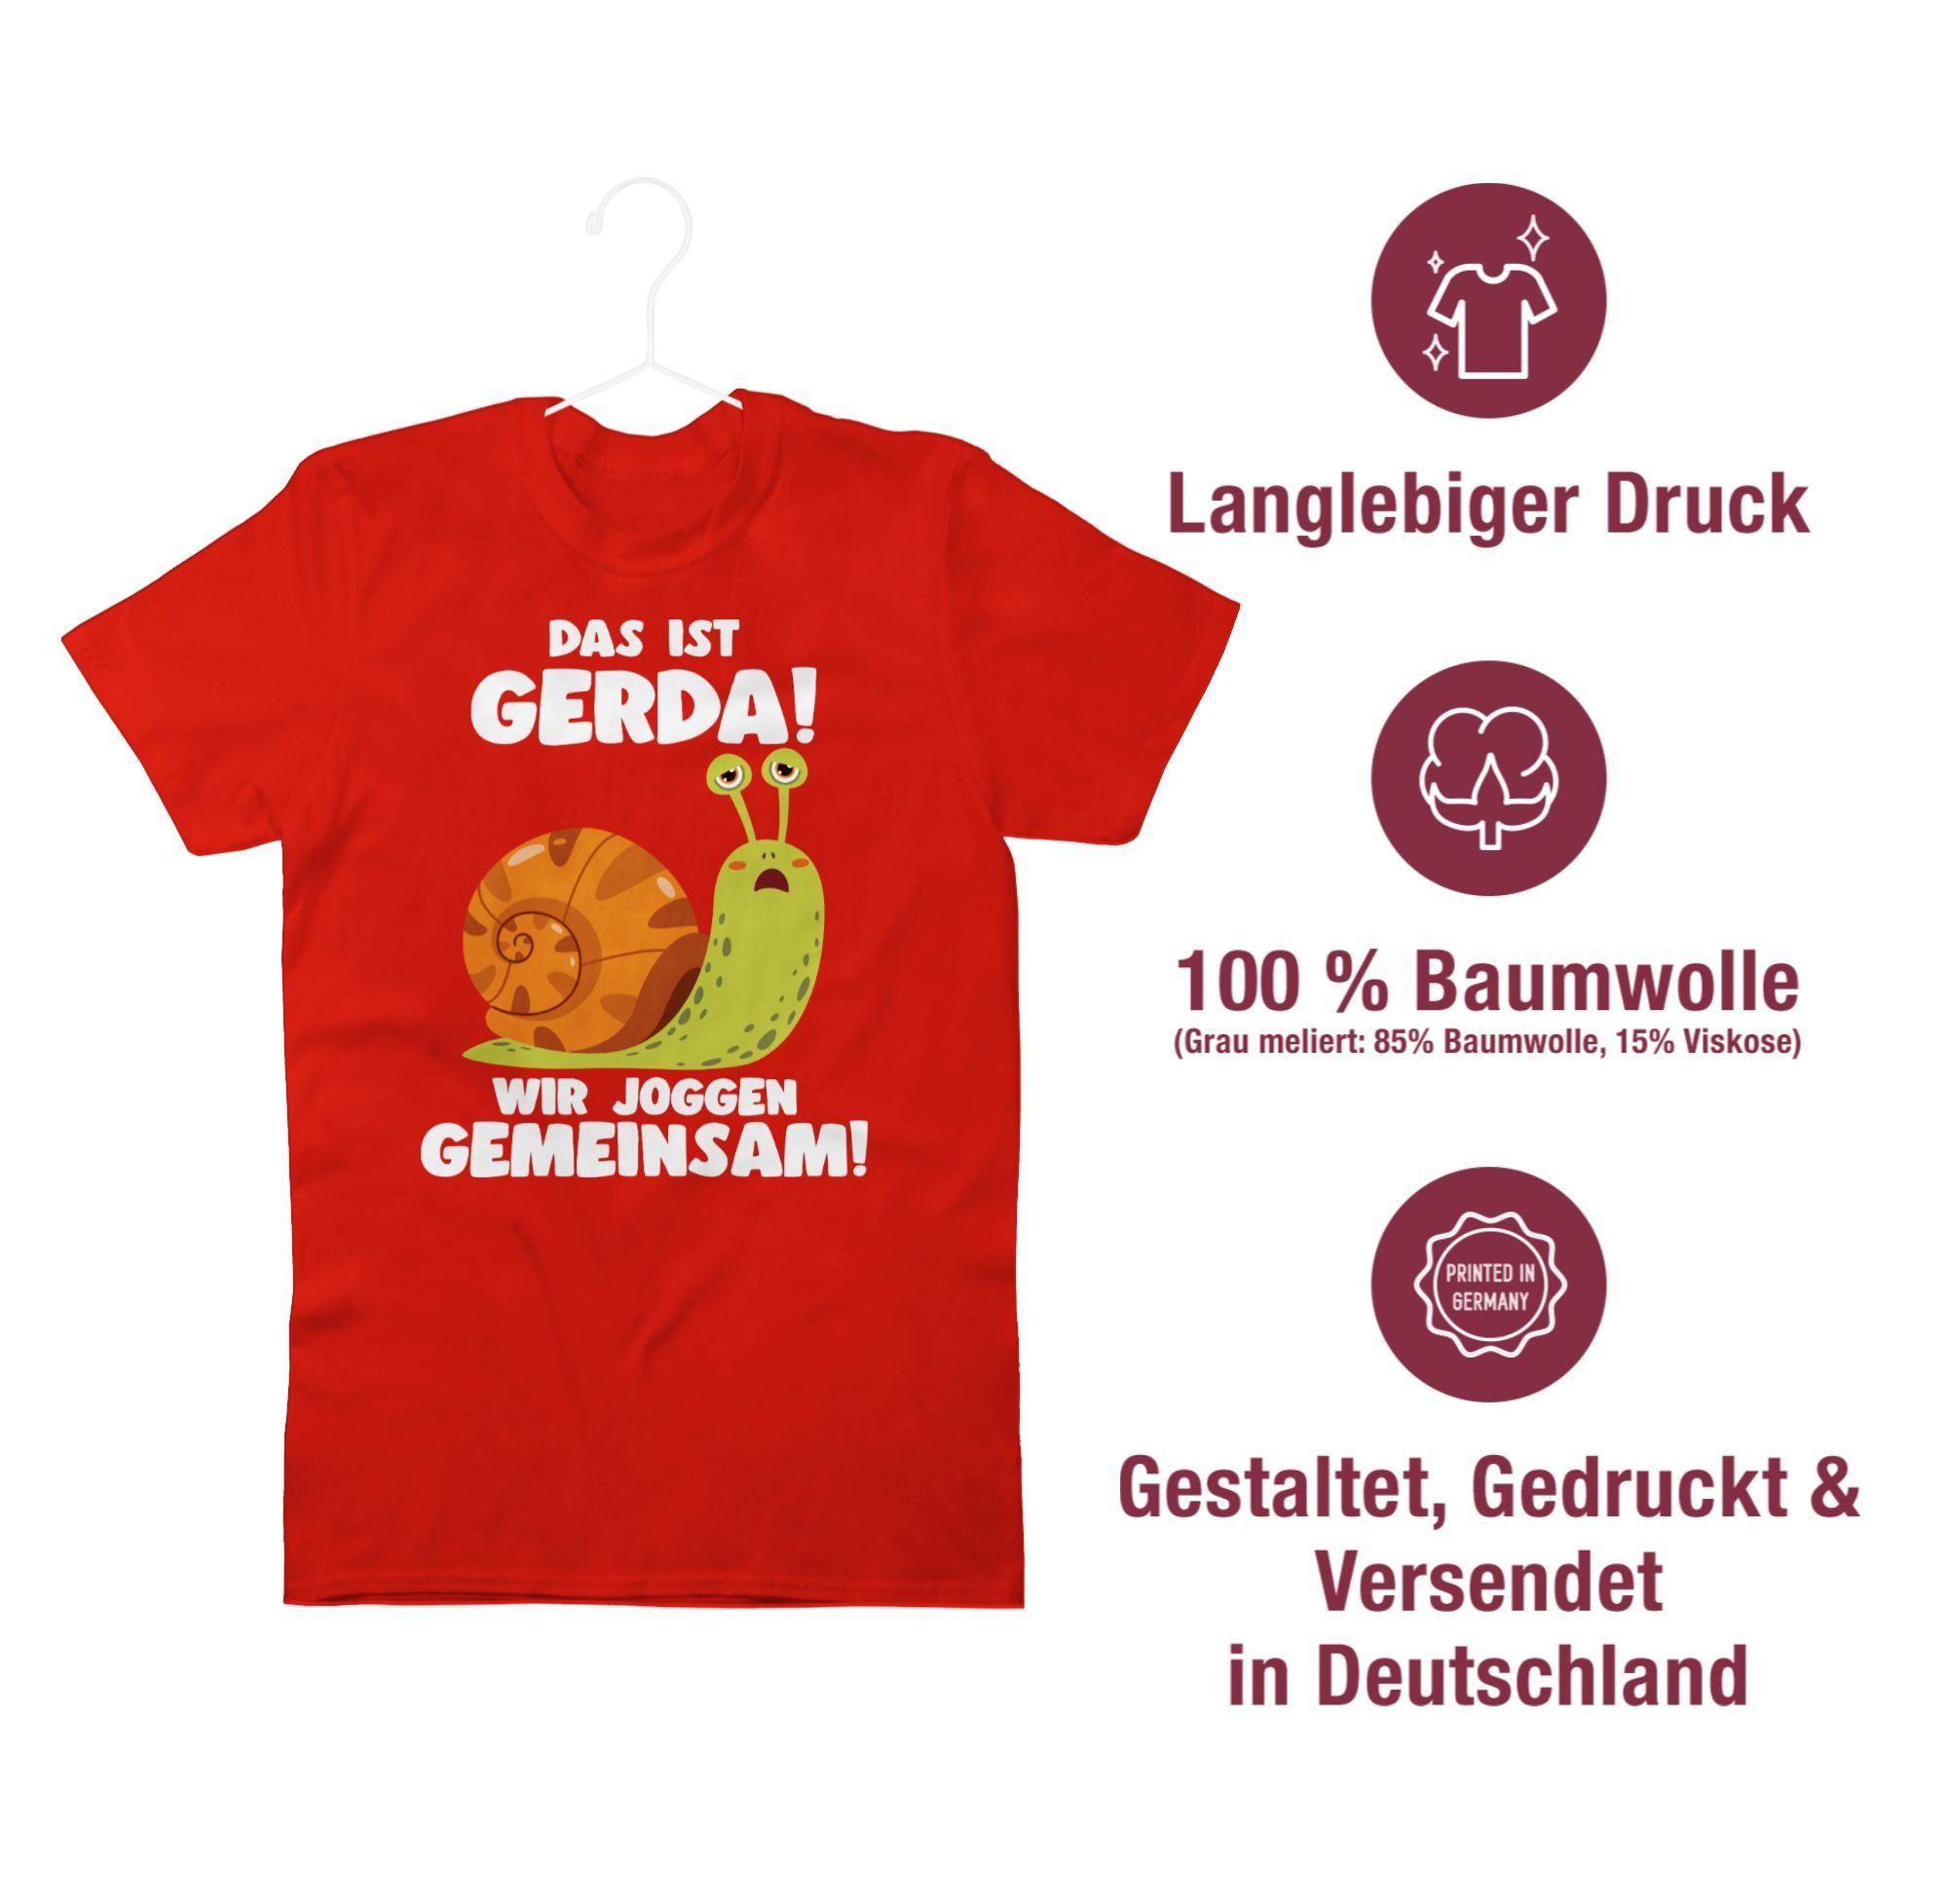 Sp Wir - ist T-Shirt Shirtracer Langsame Zubehör Lustig Das Joggen 03 Laufen Gerda gemeinsam Joggen Wandern joggen Schecke Rot